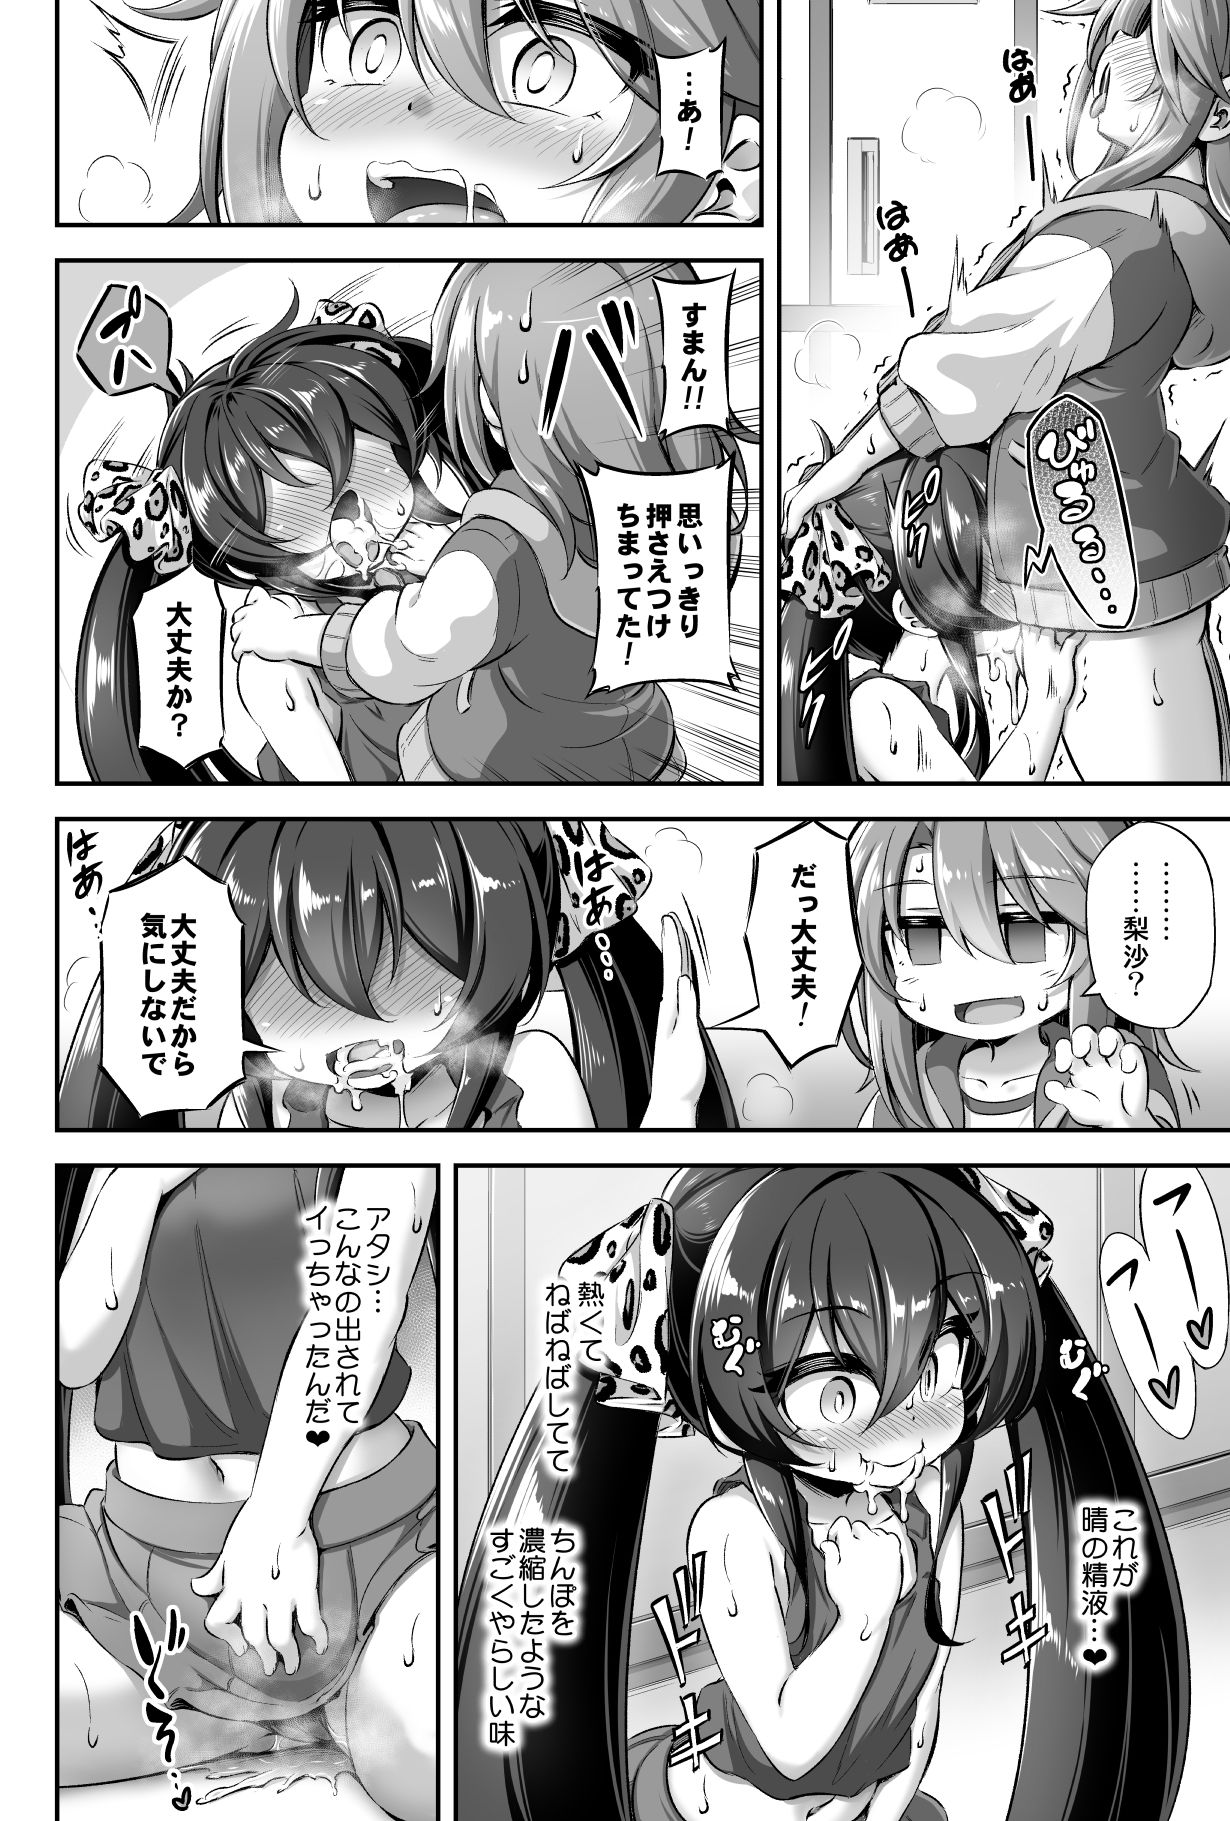 [Achromic (Musouduki)] Loli & Futa Vol. 13 (THE IDOLM@STER CINDERELLA GIRLS) [Digital] page 15 full